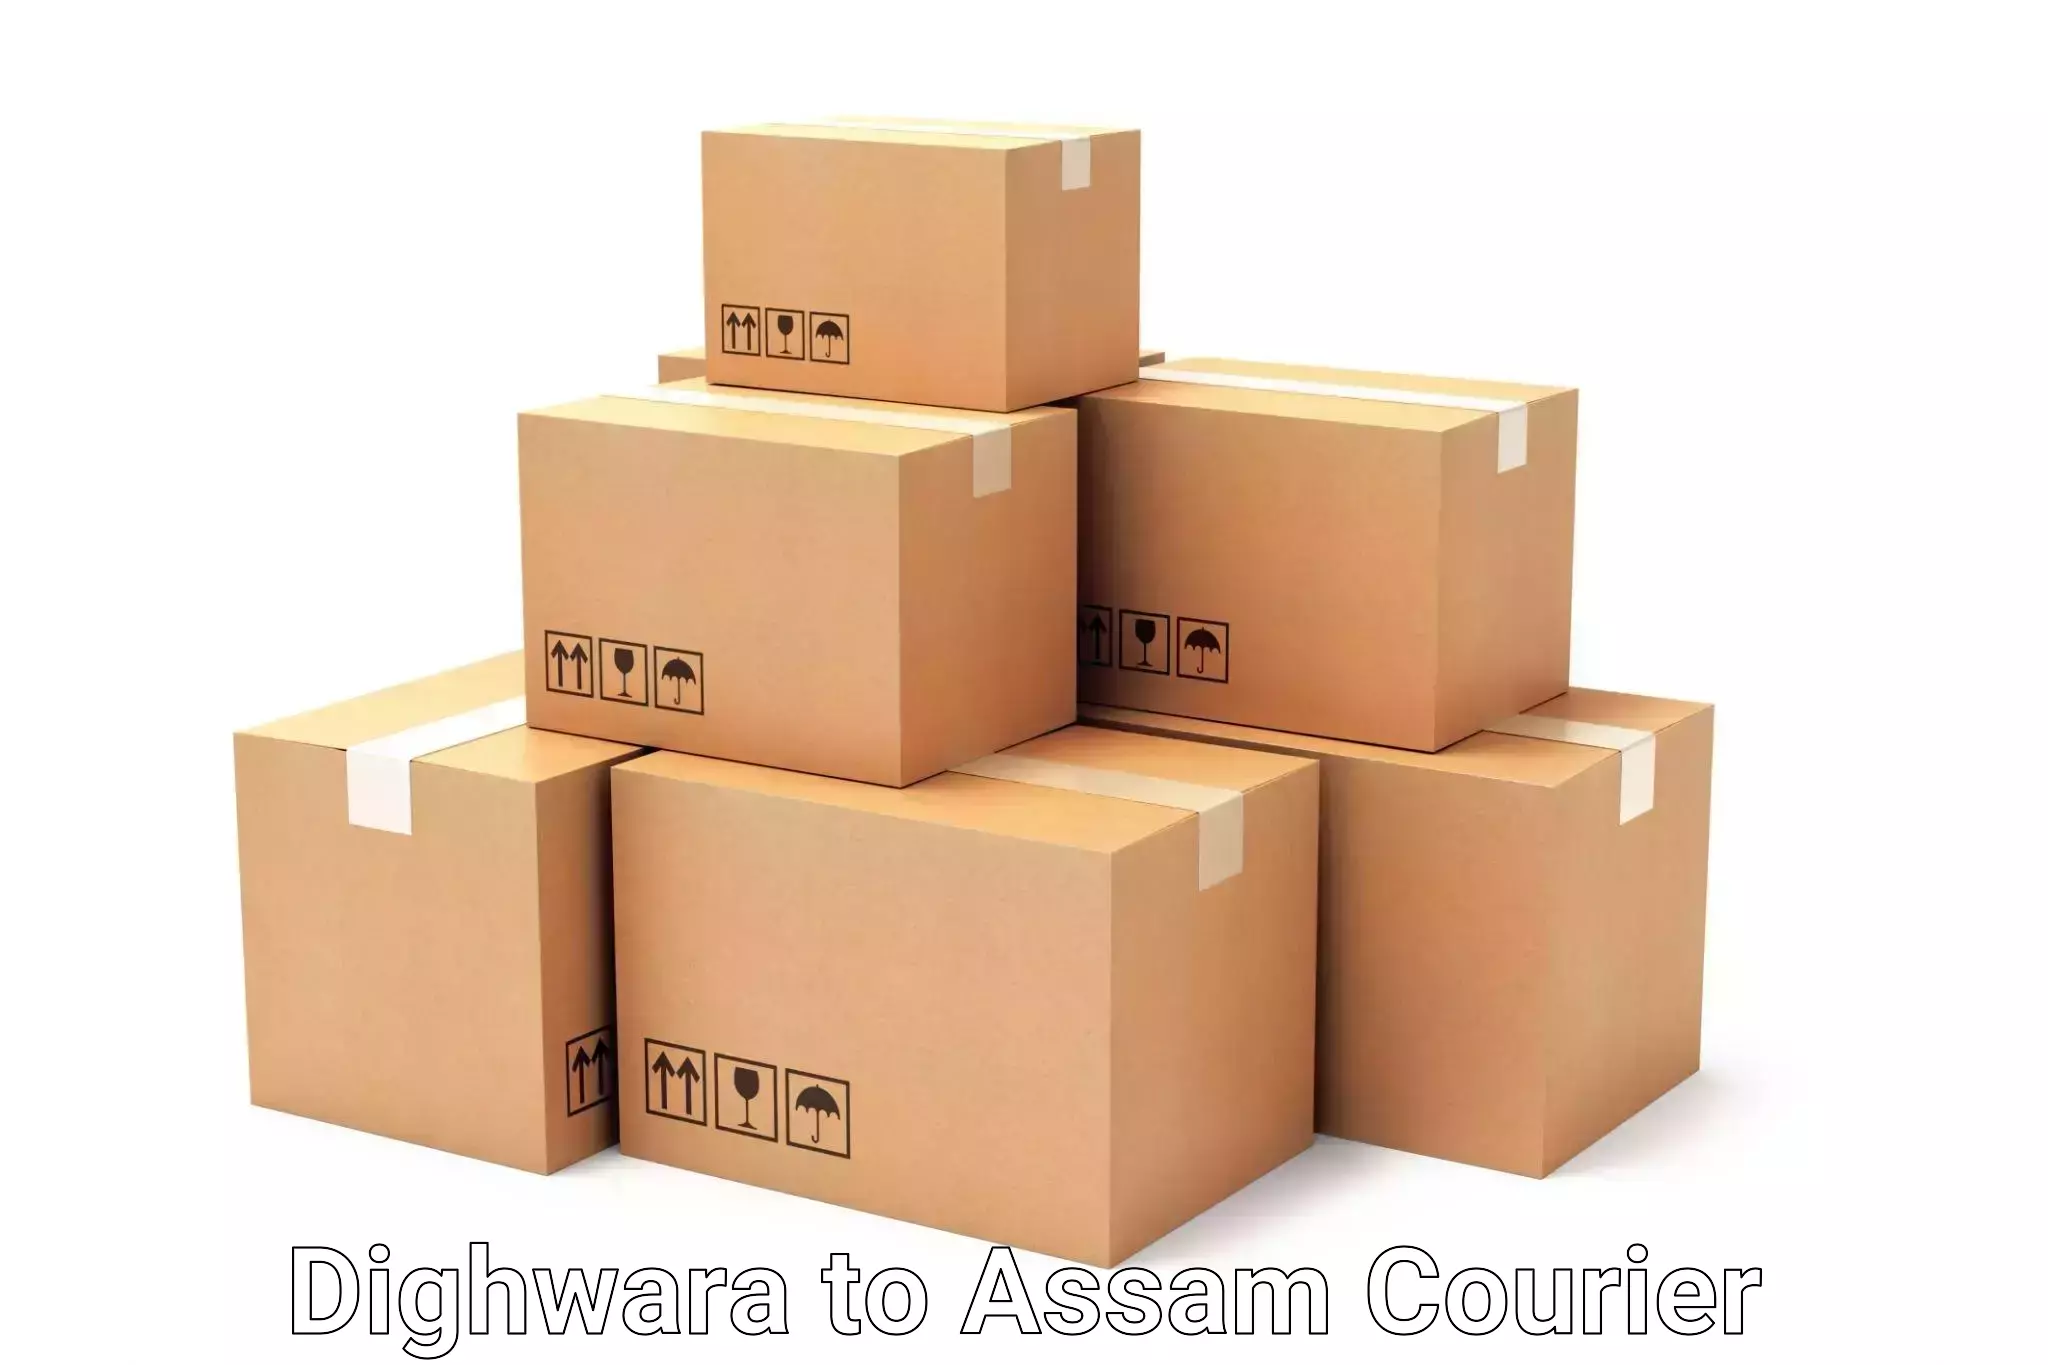 Luggage delivery app Dighwara to Balapara